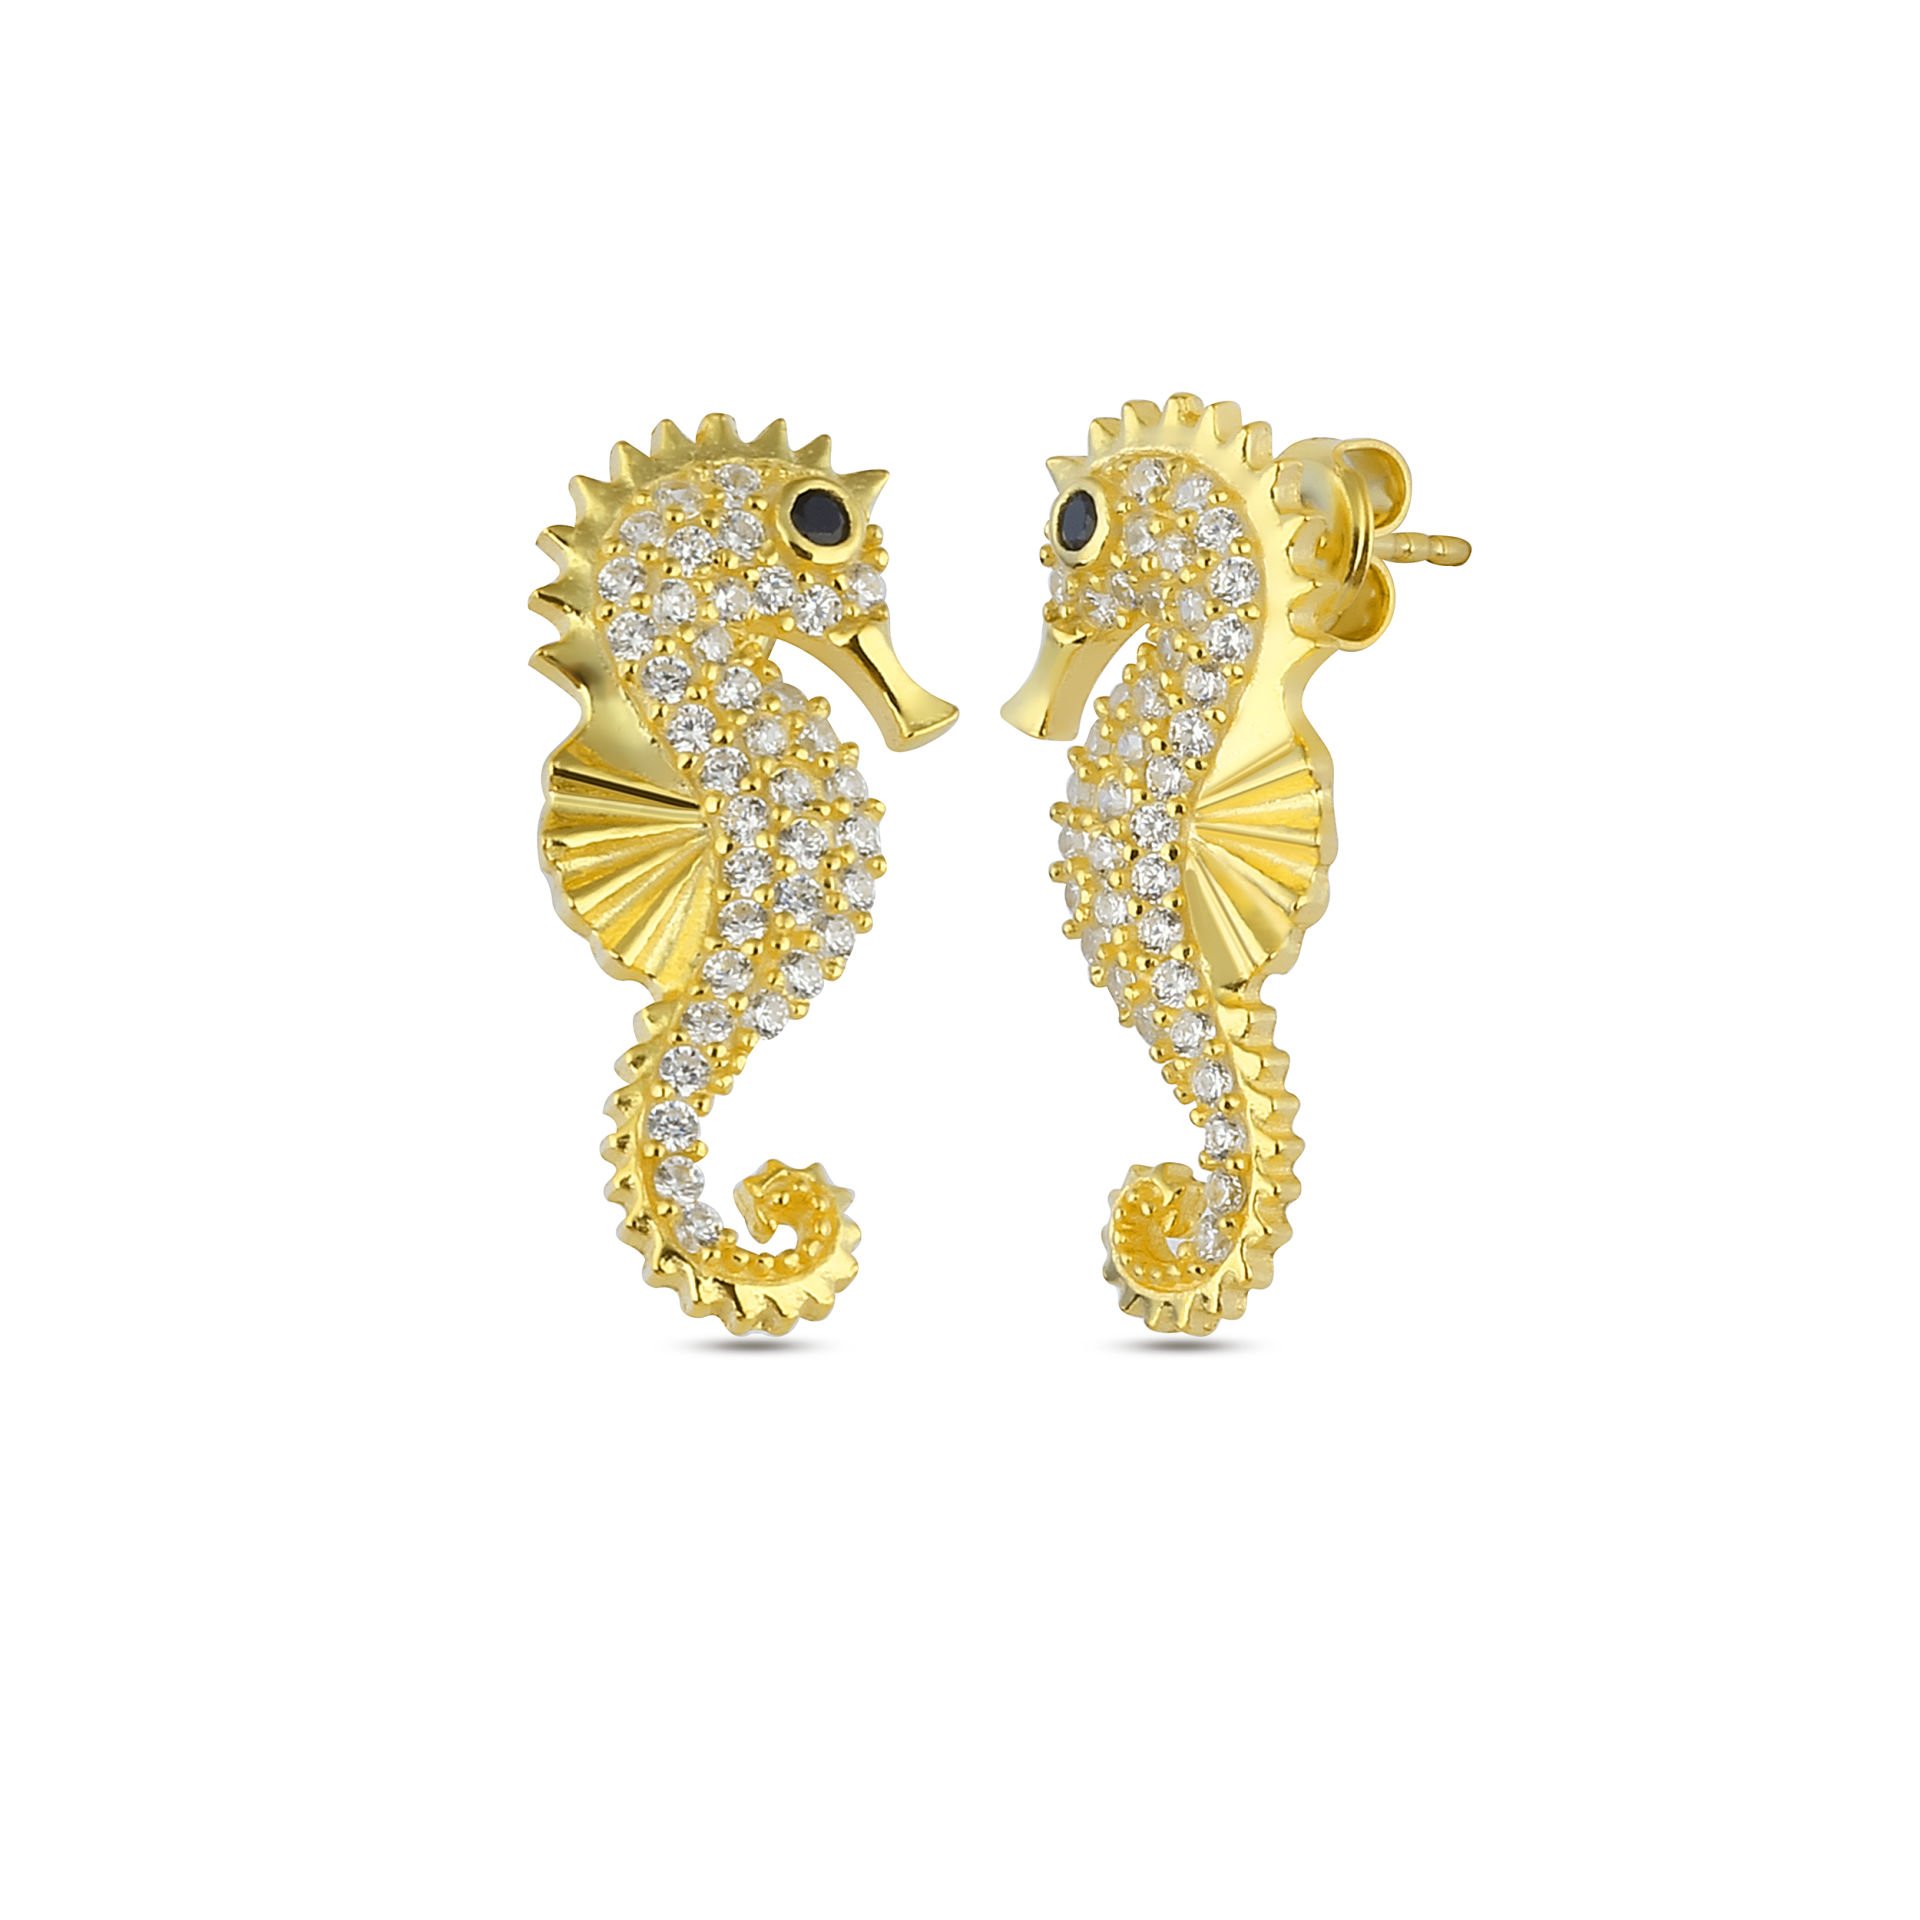 Gold Sea Horse Earrings